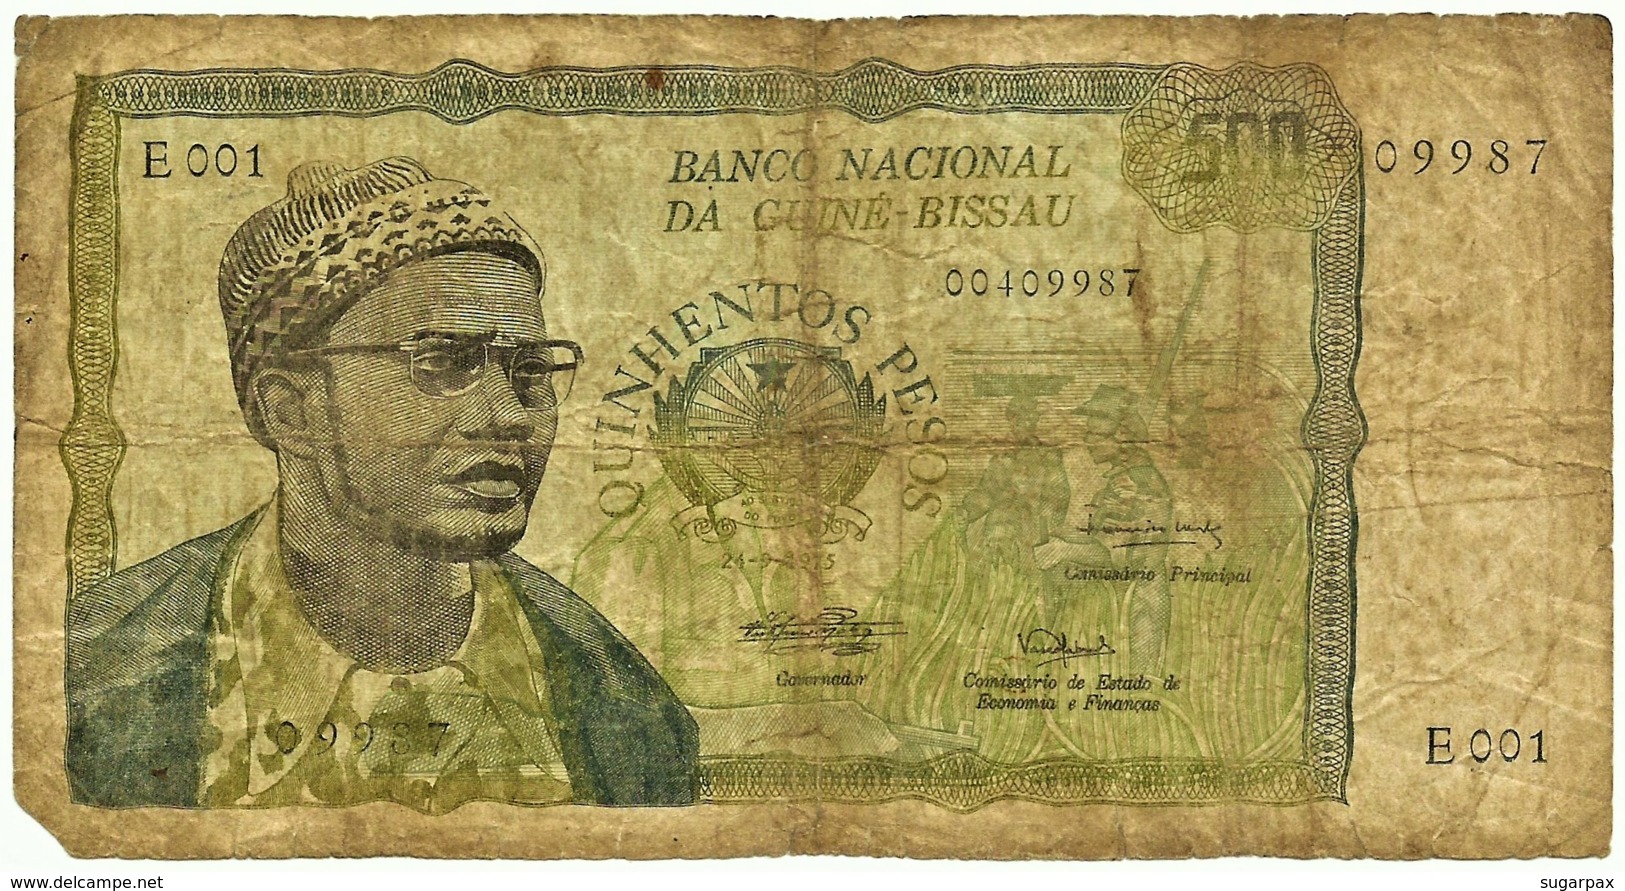 Guiné-Bissau - 500 Pesos - 24.09.1975 - P 3 - Very RARE - Serie E 001 - Presidente Amilcar Cabral - Guinea–Bissau